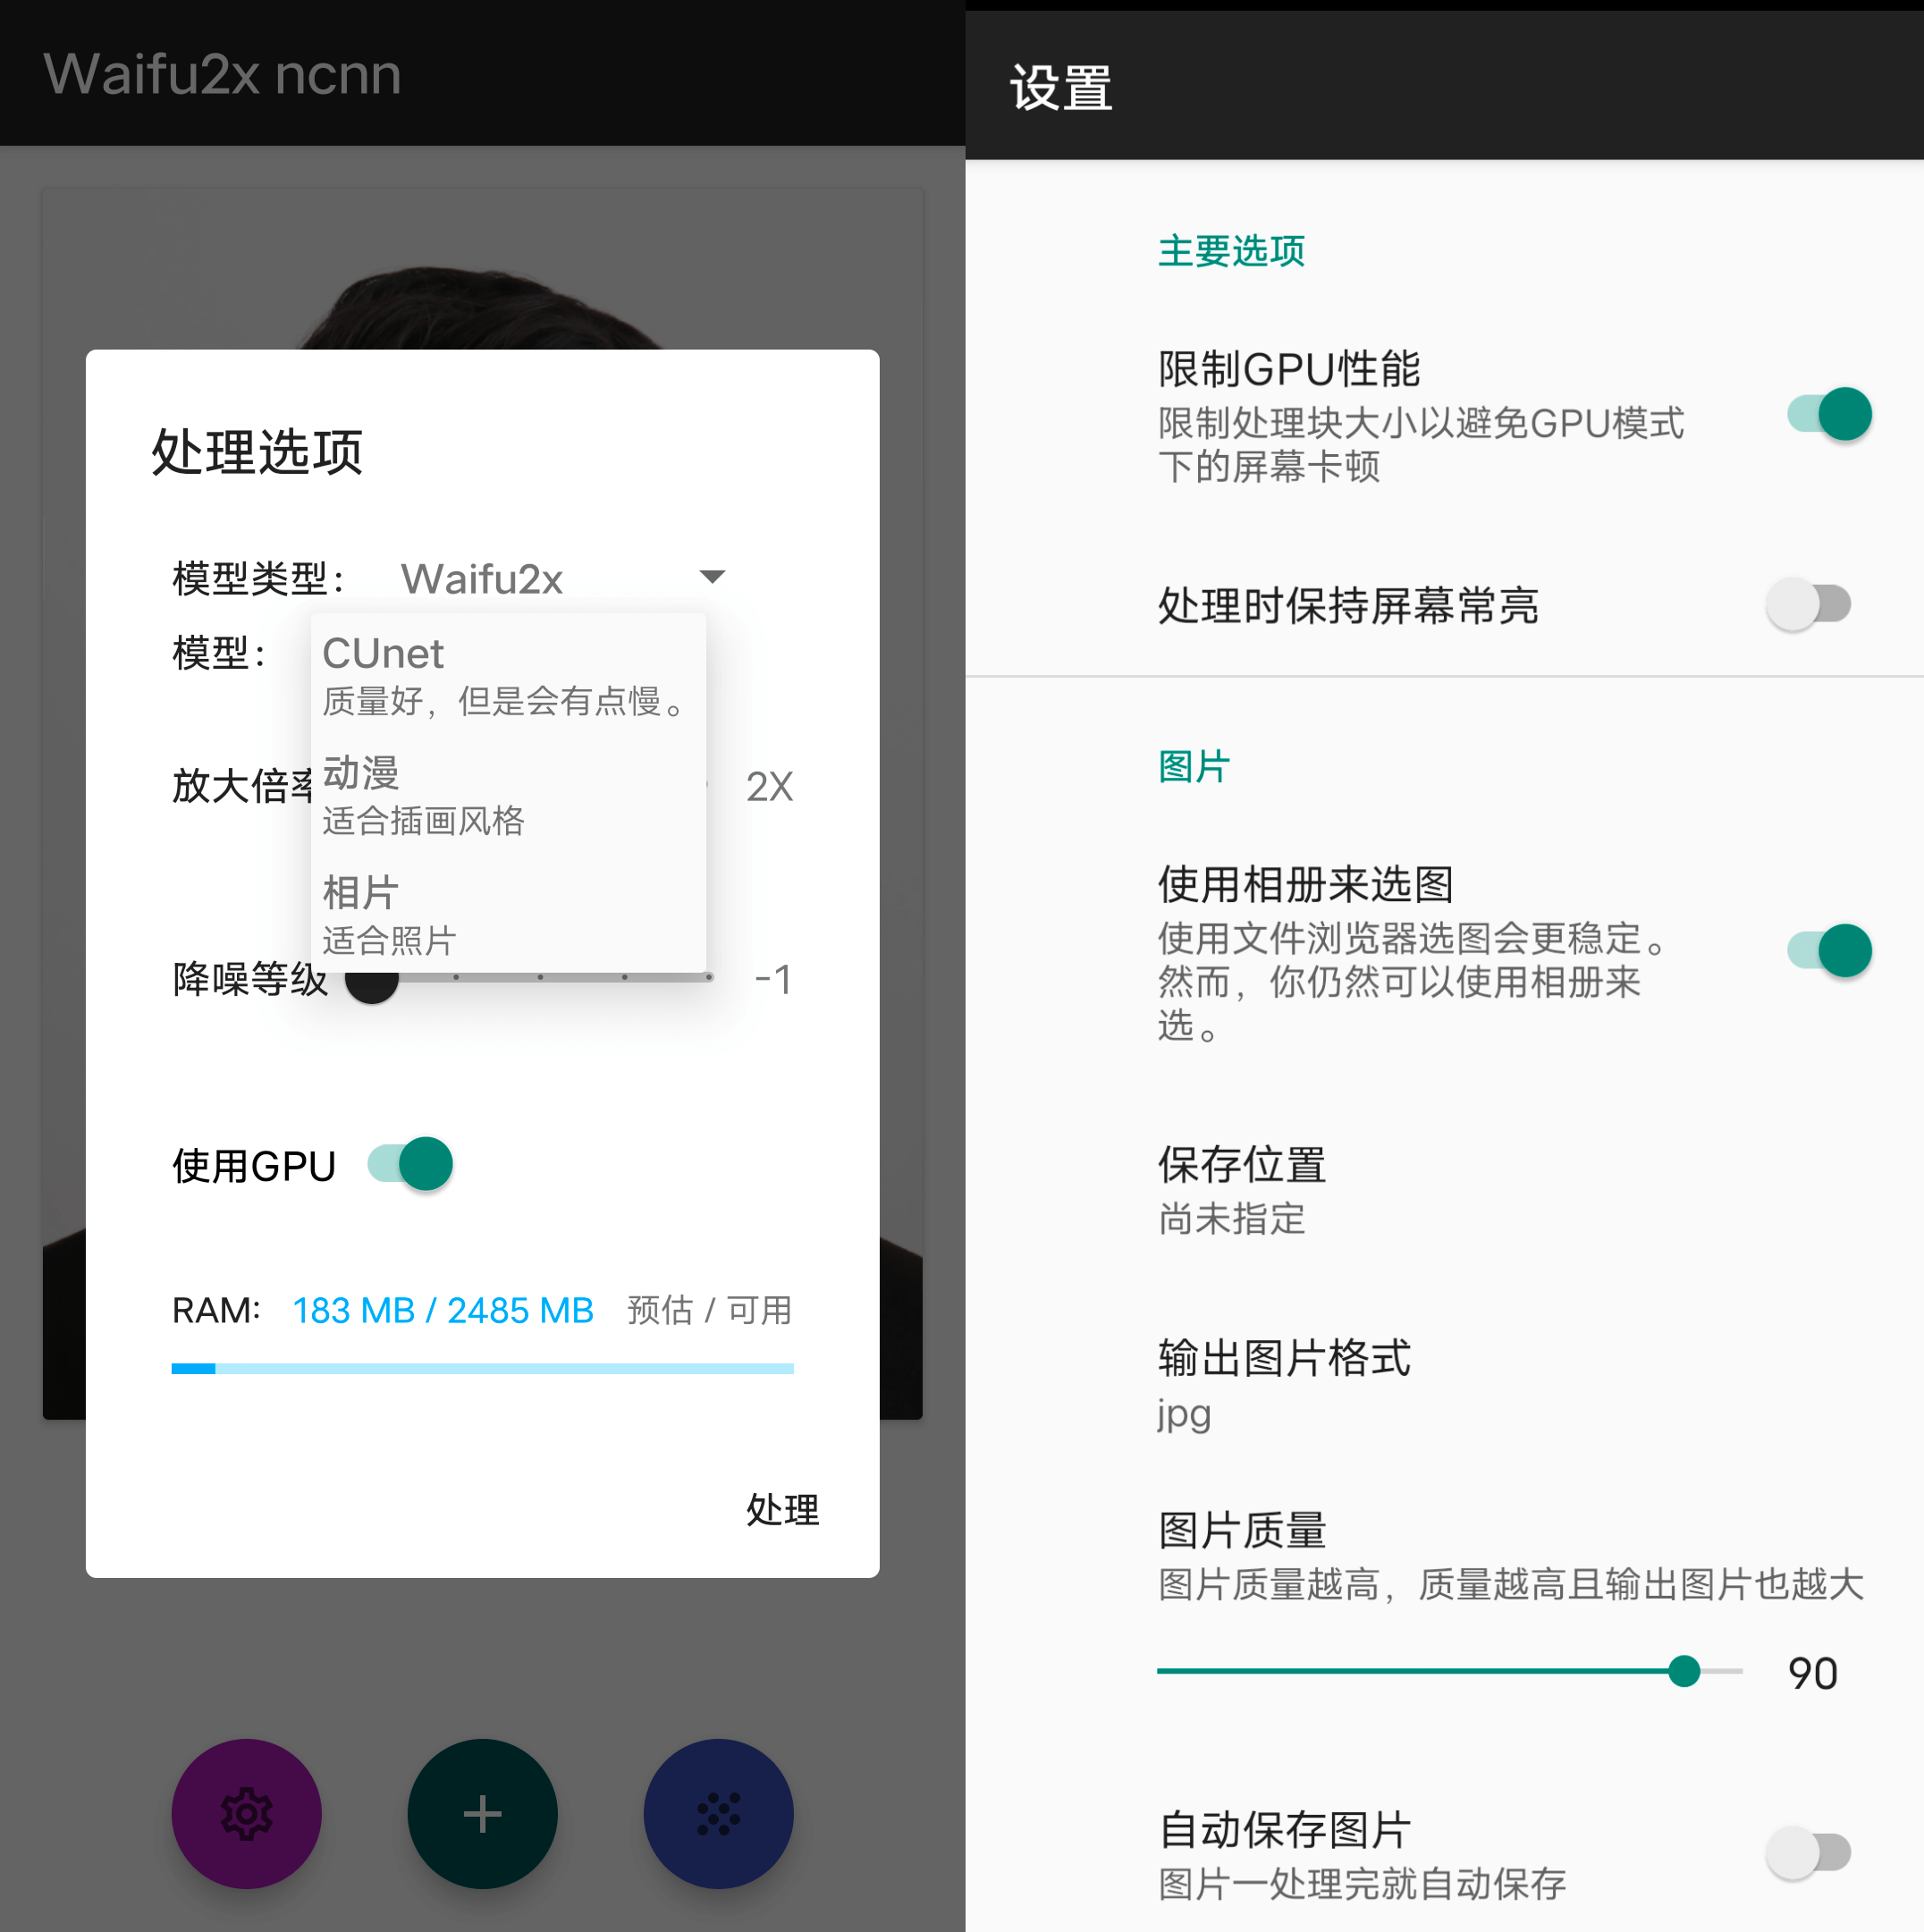 Android Waifu2x ncnn 图片放大降噪_v2.4.16